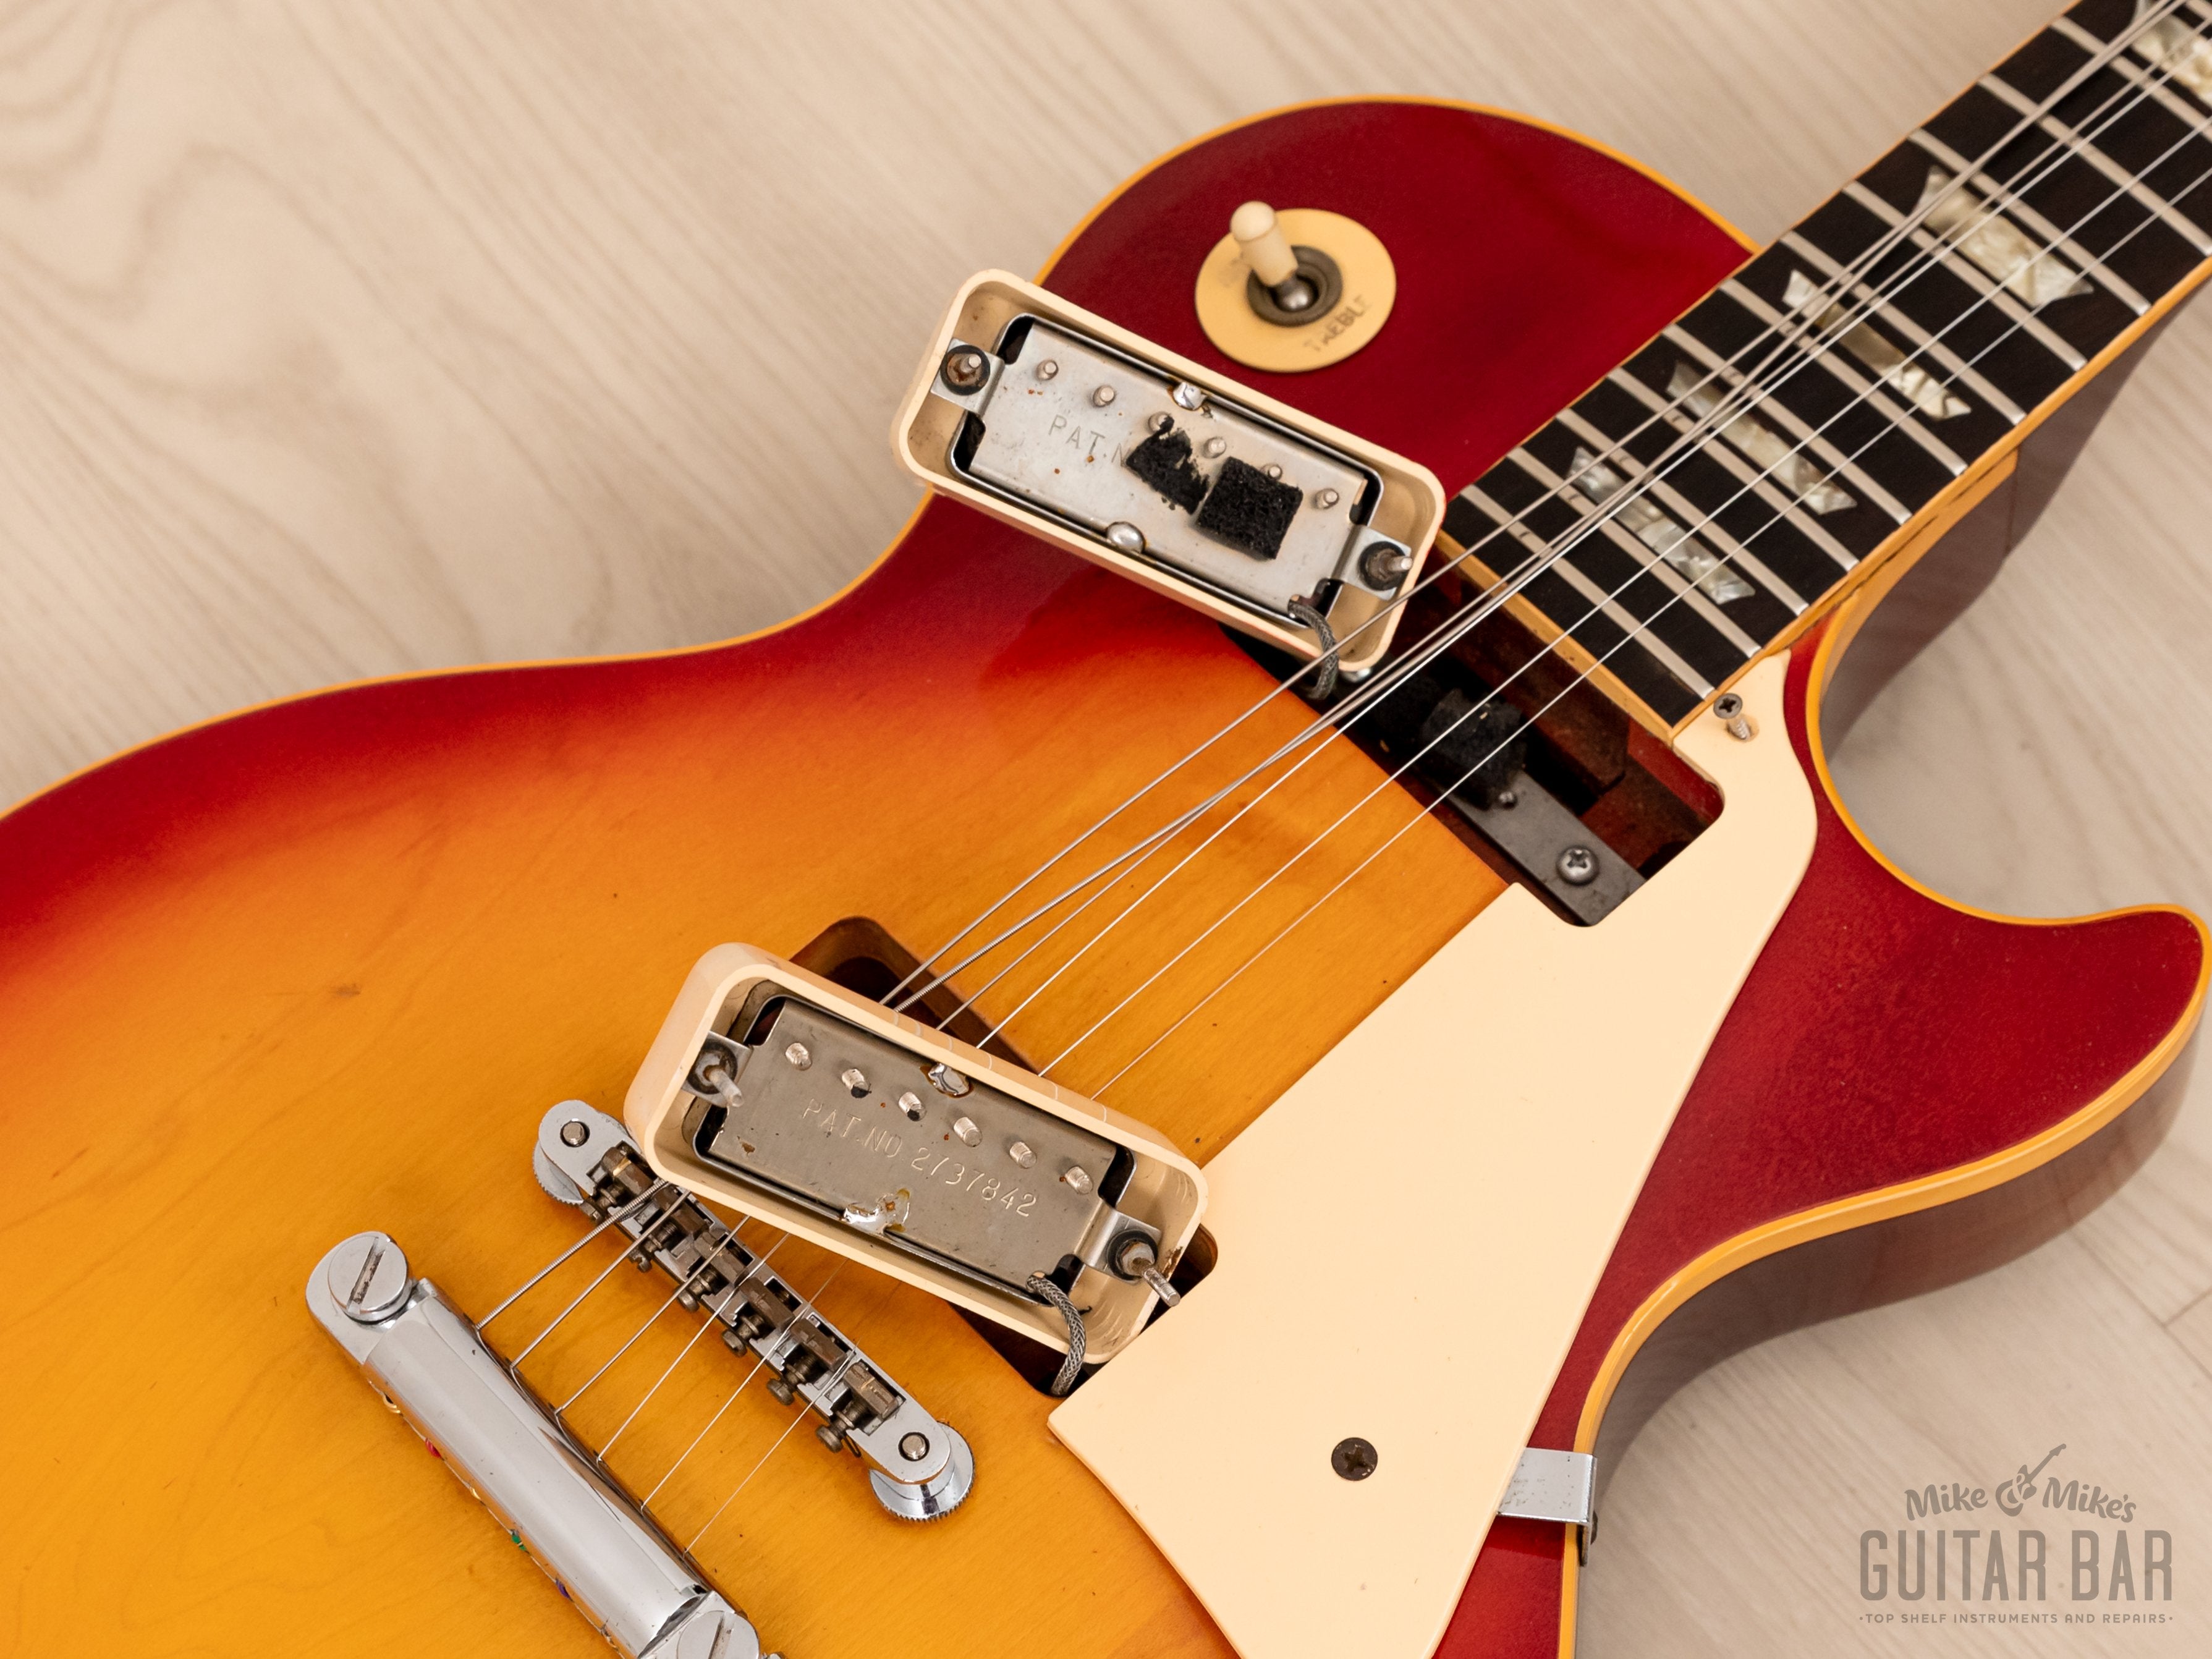 1974 Gibson Les Paul Deluxe Vintage Guitar Cherry Sunburst w/ Case